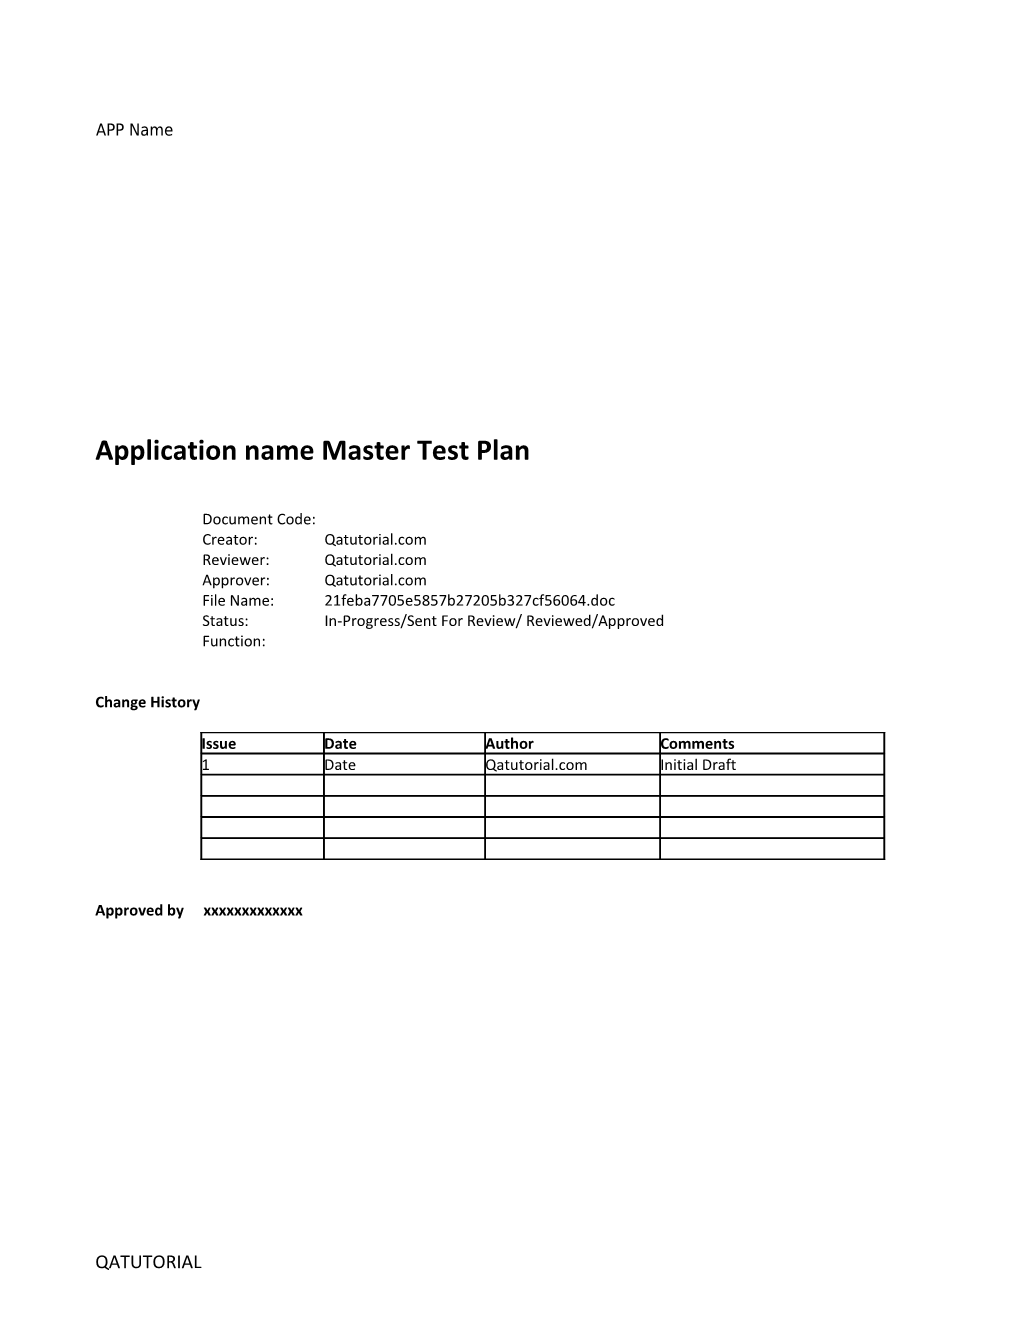 Application Name Master Test Plan